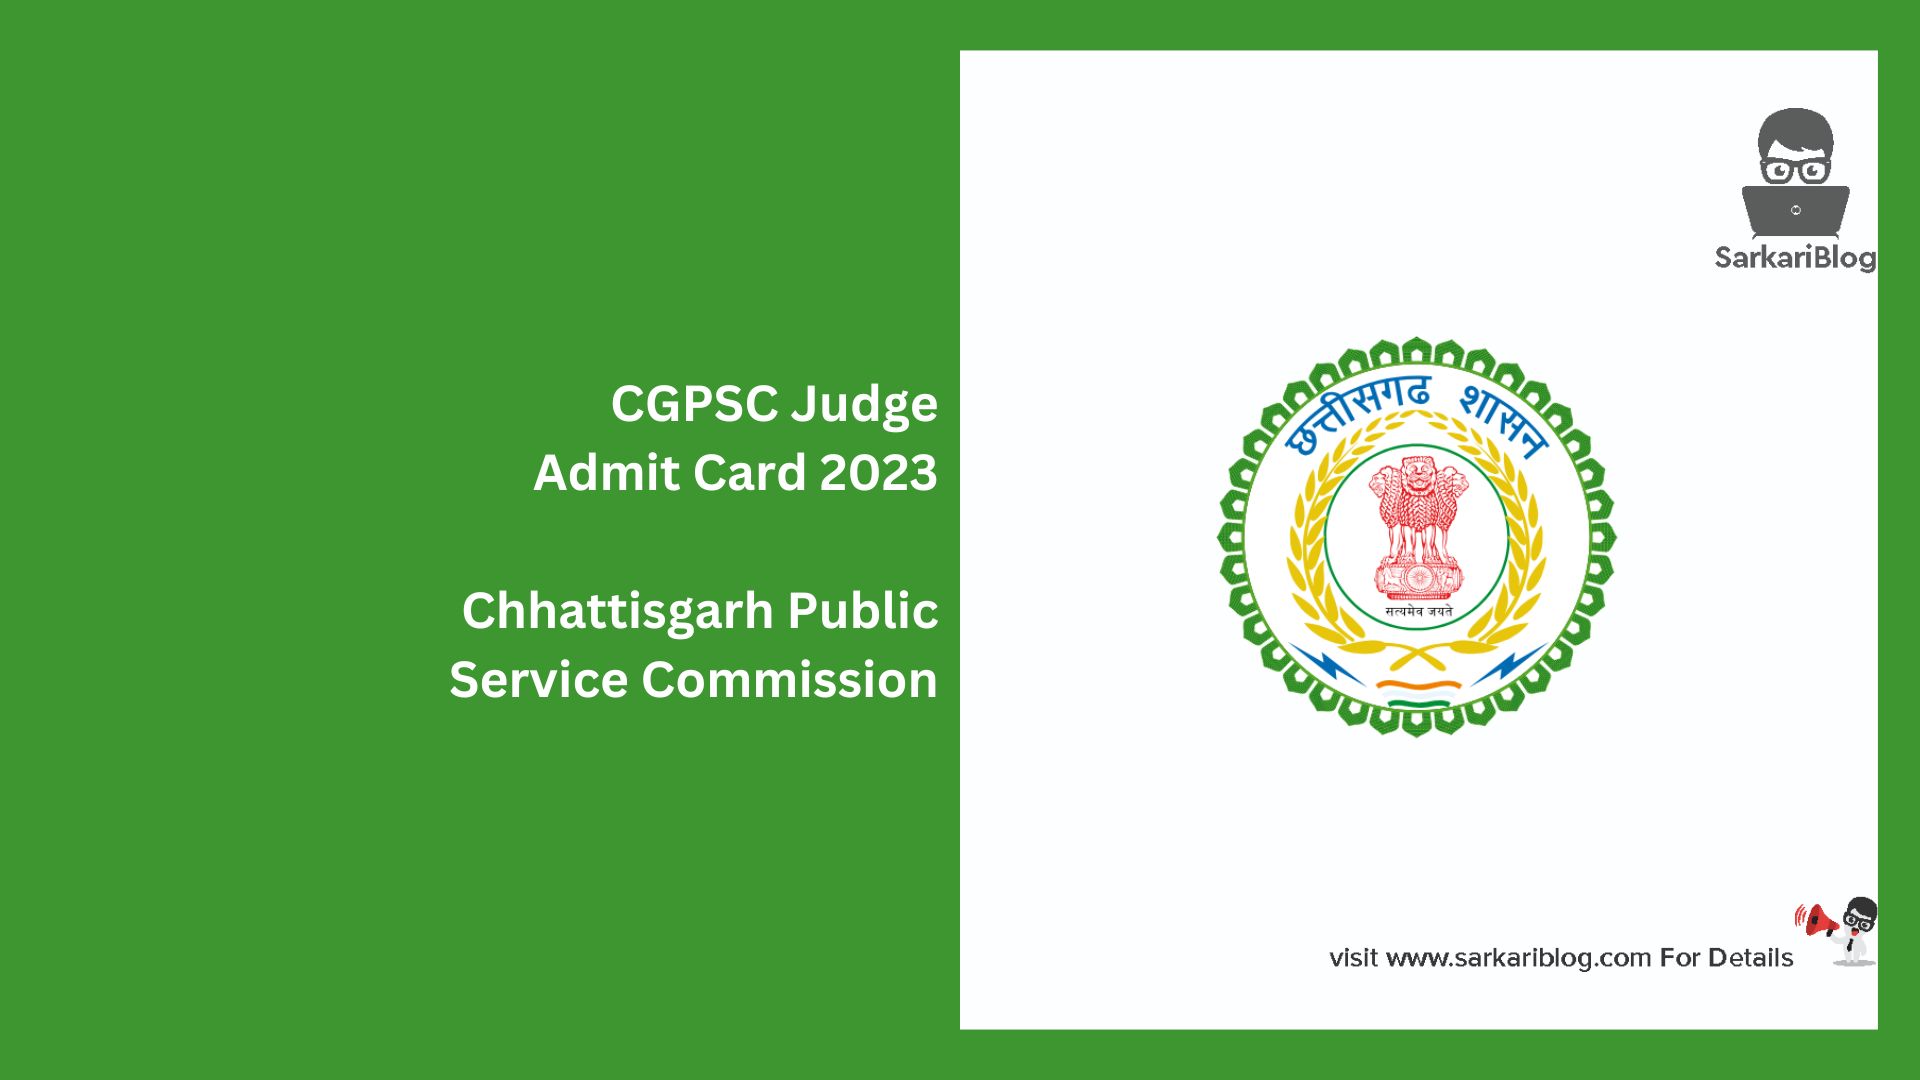 CGPSC Judge Admit Card 2023